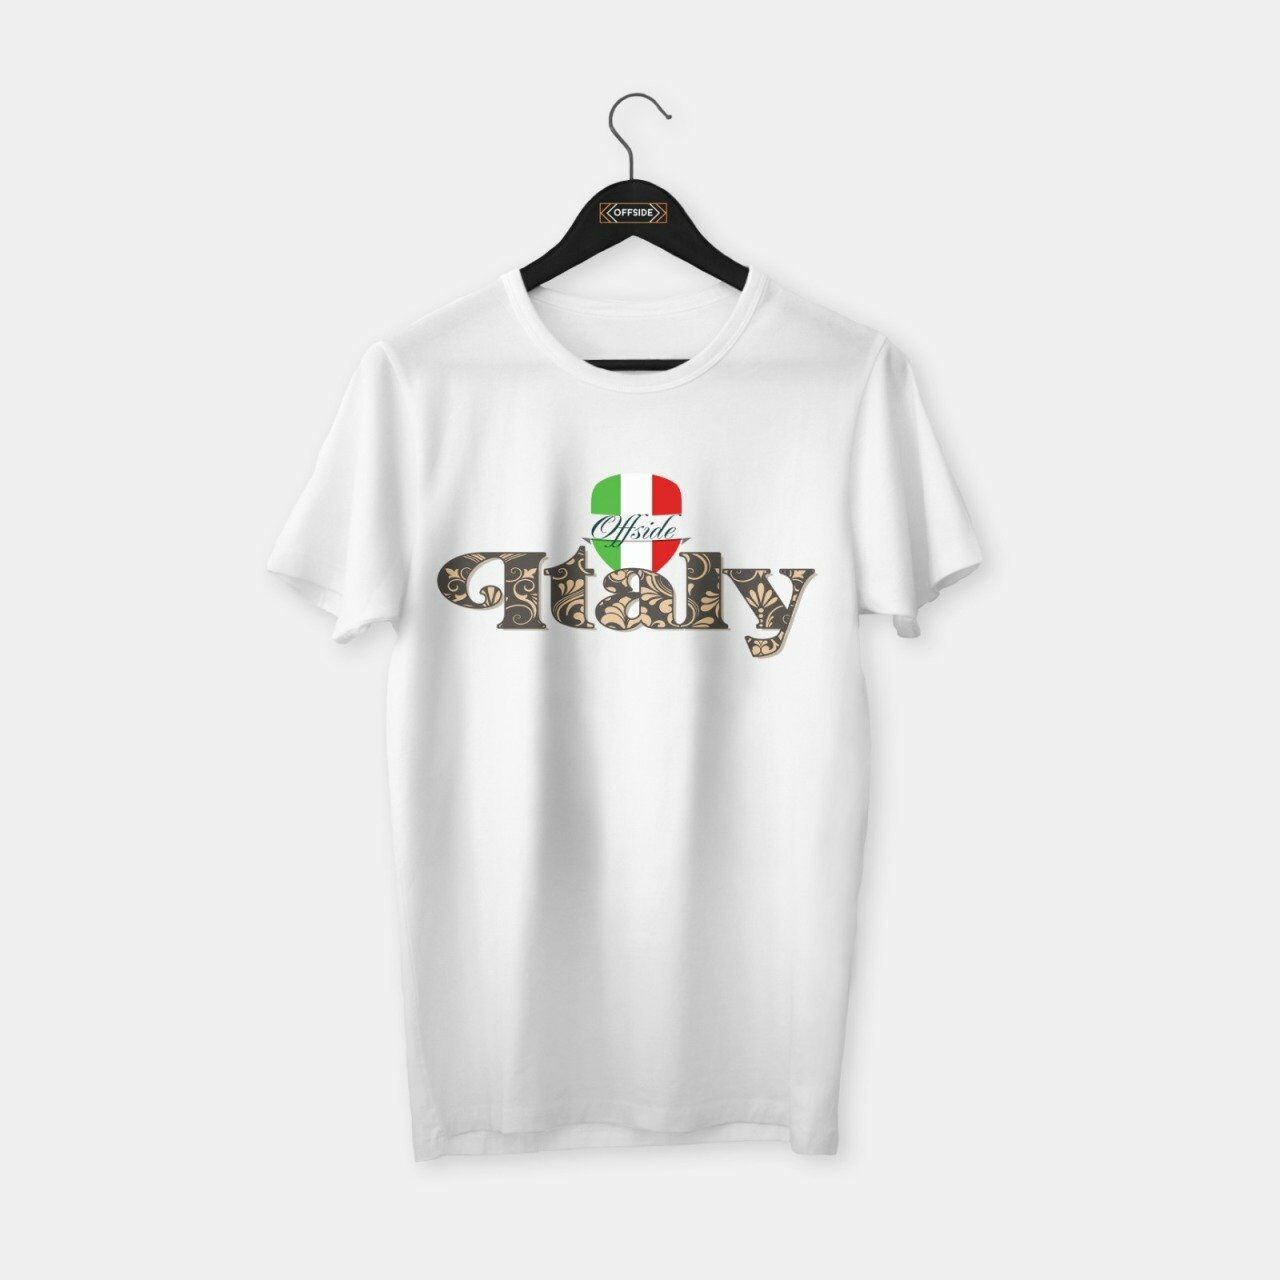 Italy (İtalya) Renaissance T-shirt